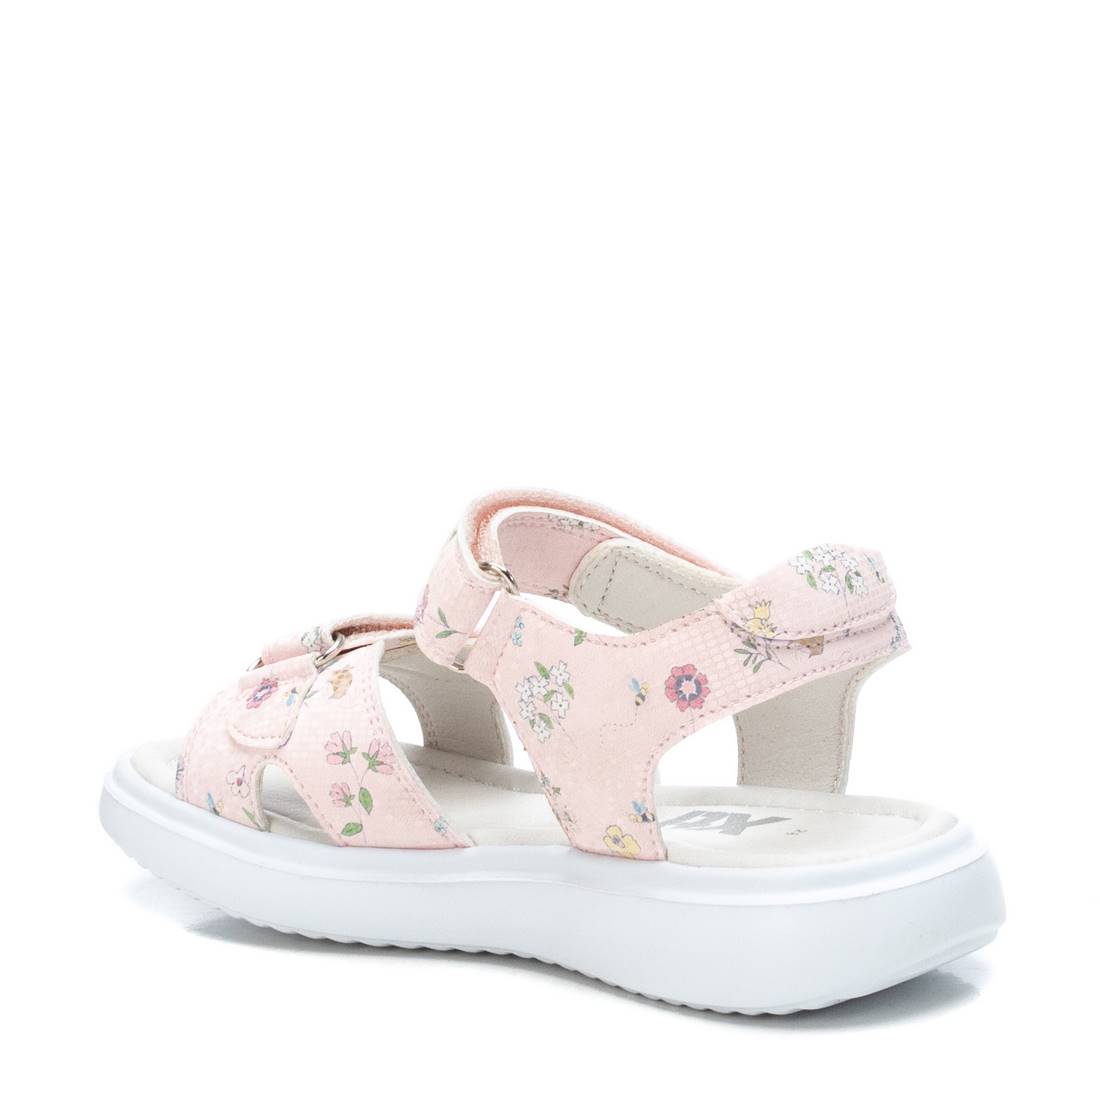 Giày Sandals Kids PU Floral Hồng S31